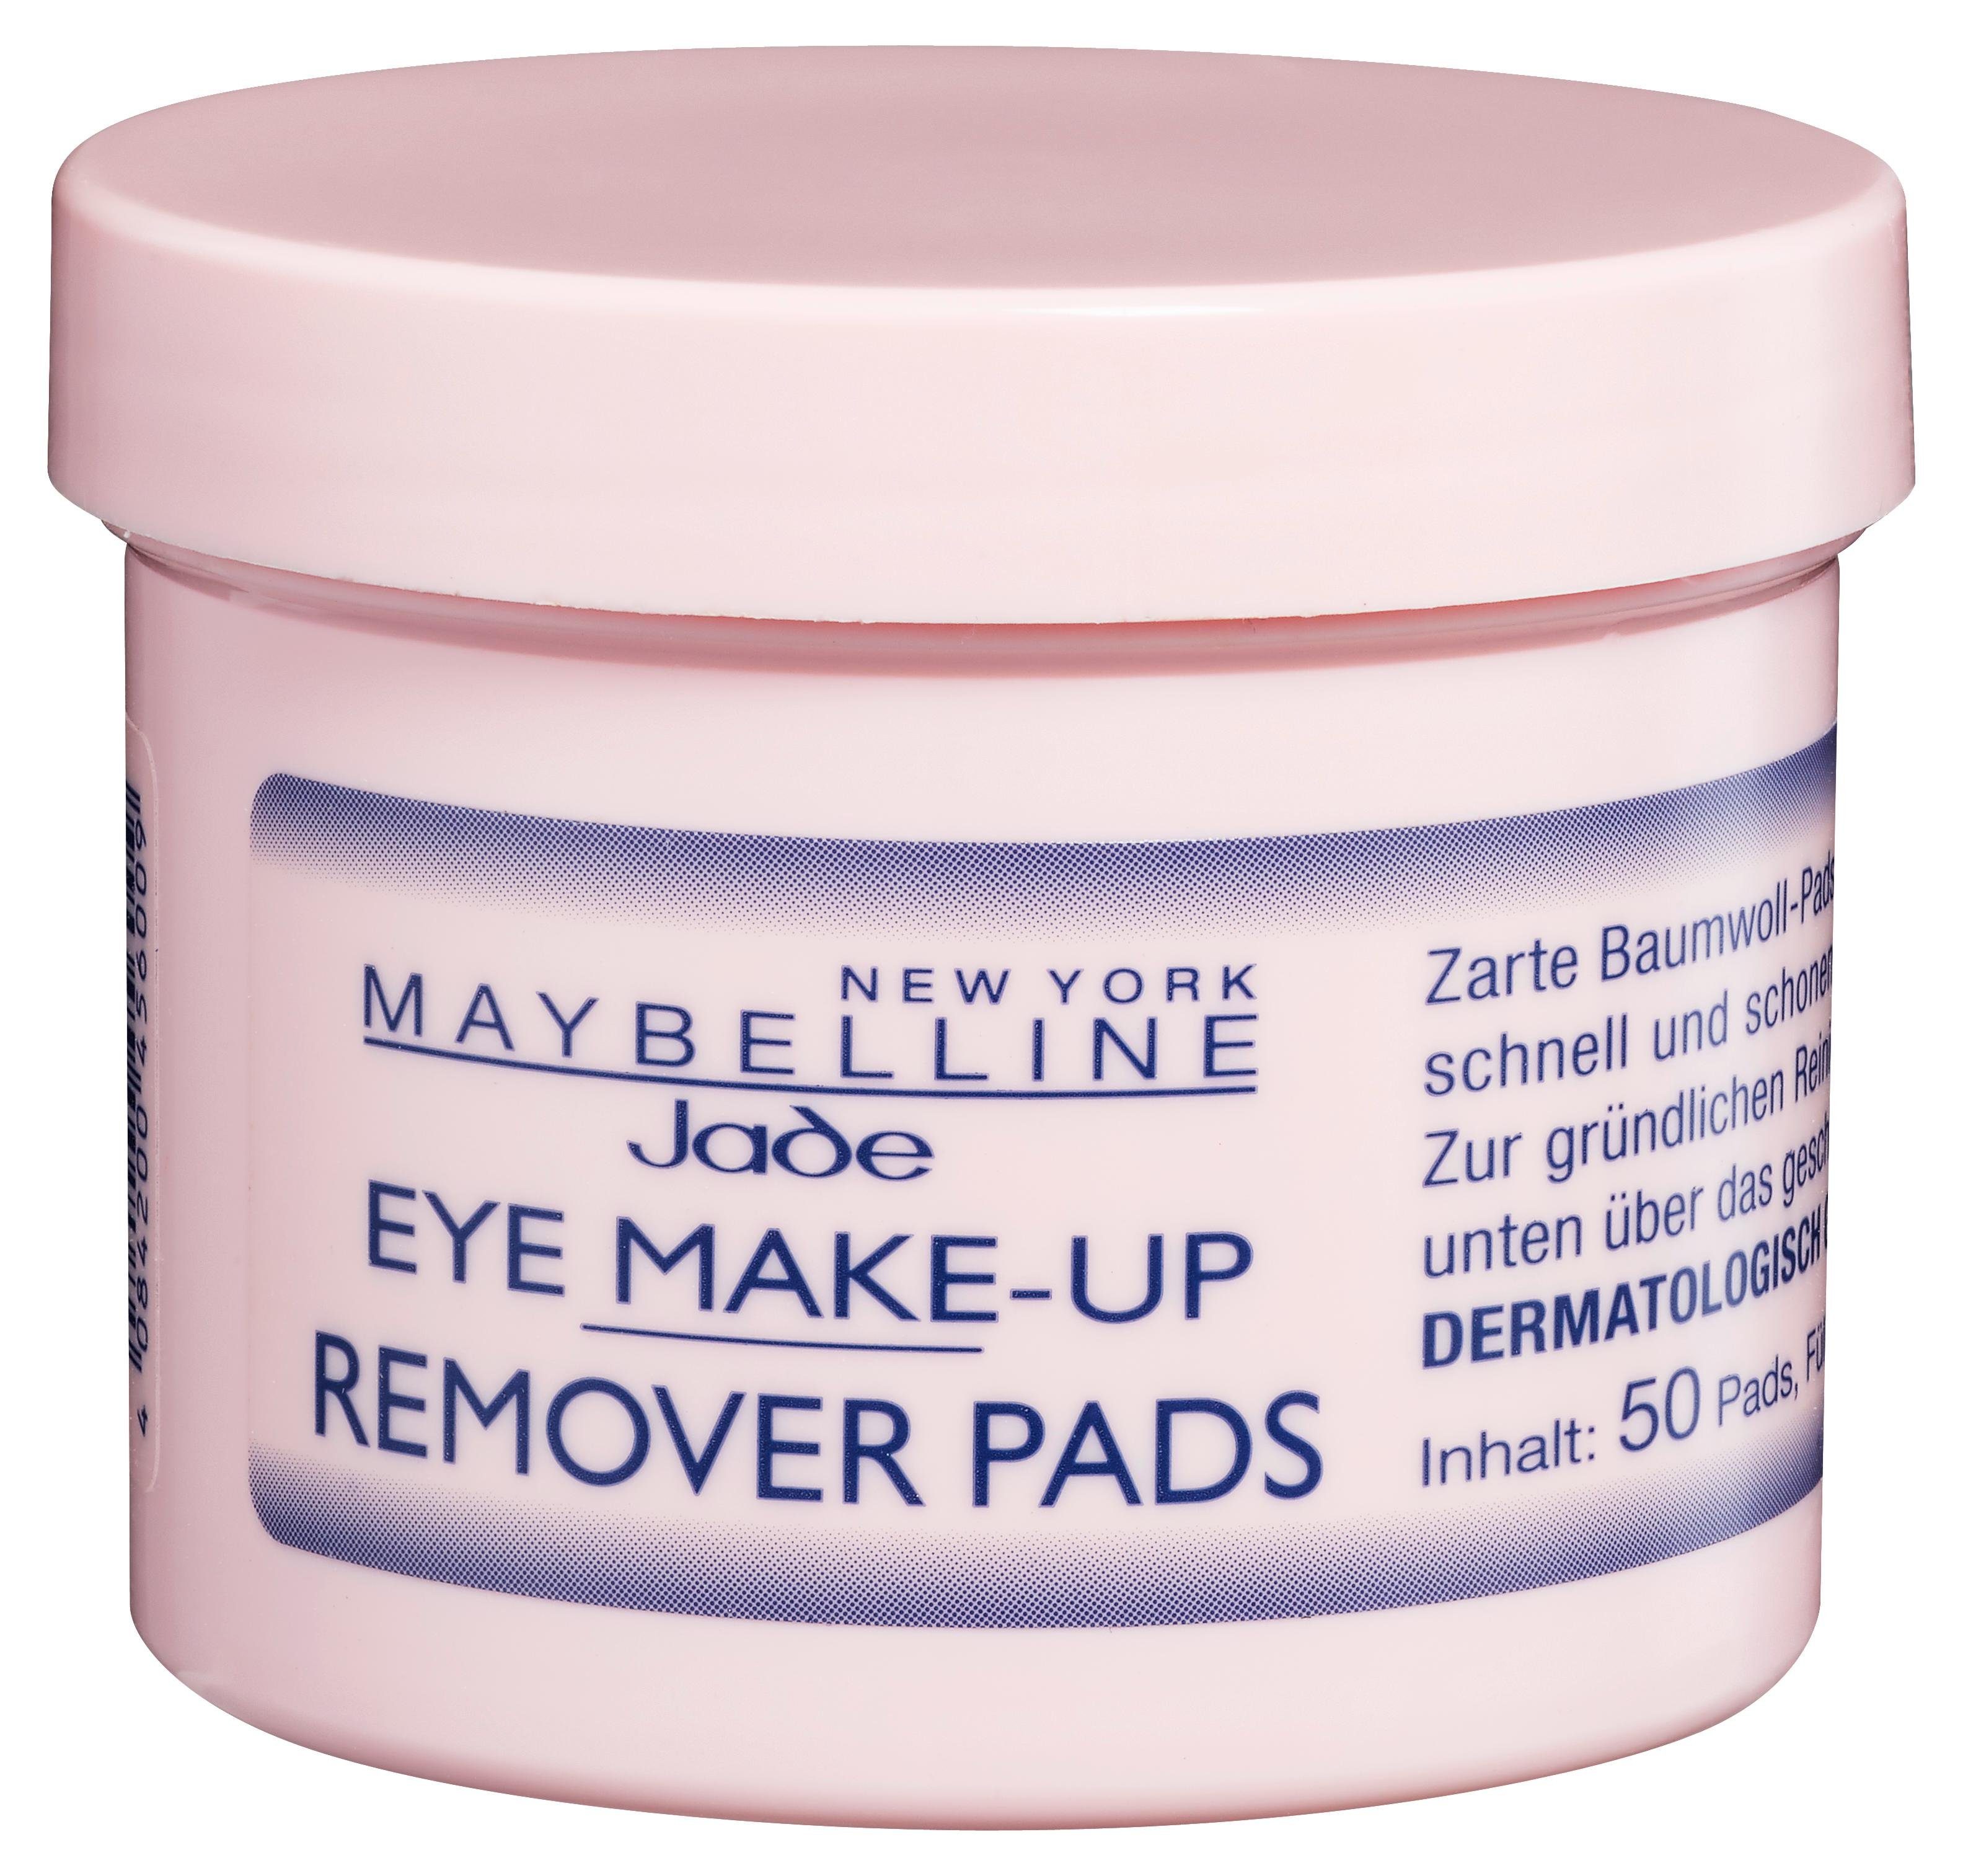 Augen-Make-up-Entferner Remover YORK Eye Pads MAYBELLINE NEW Make-Up